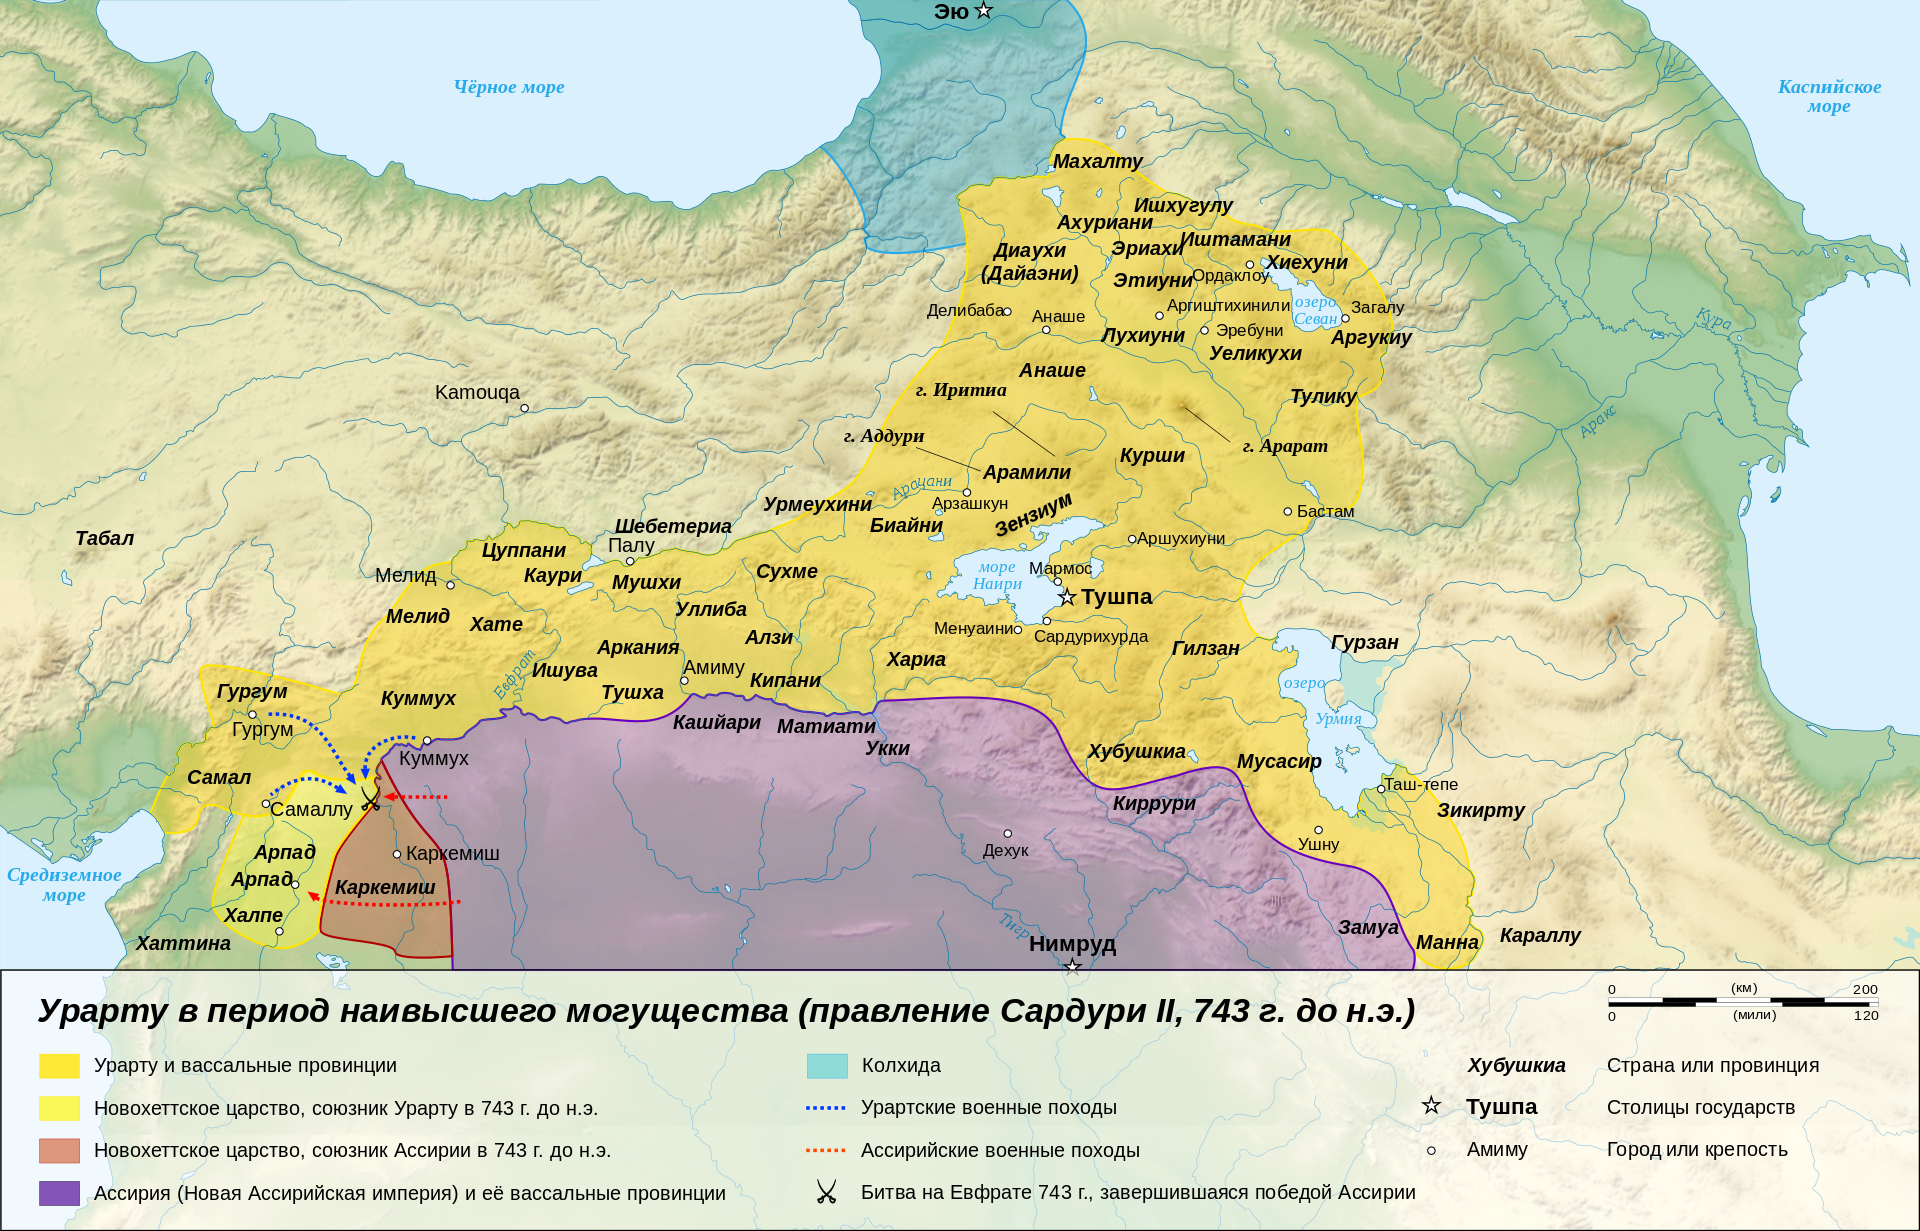 Урарту в период наибольшей территориальной экспансии в 743 г. до н. э.